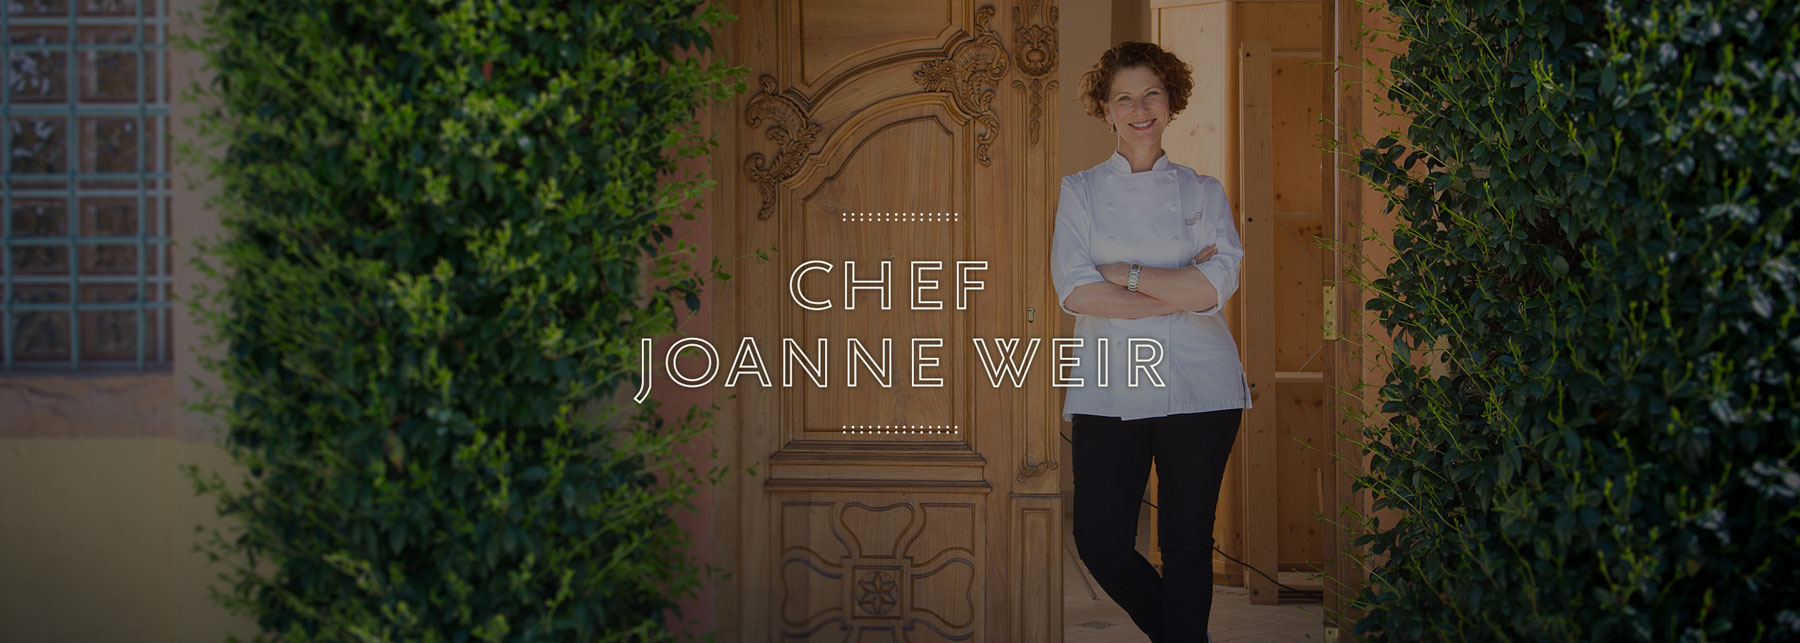 Chef Joanne Weir